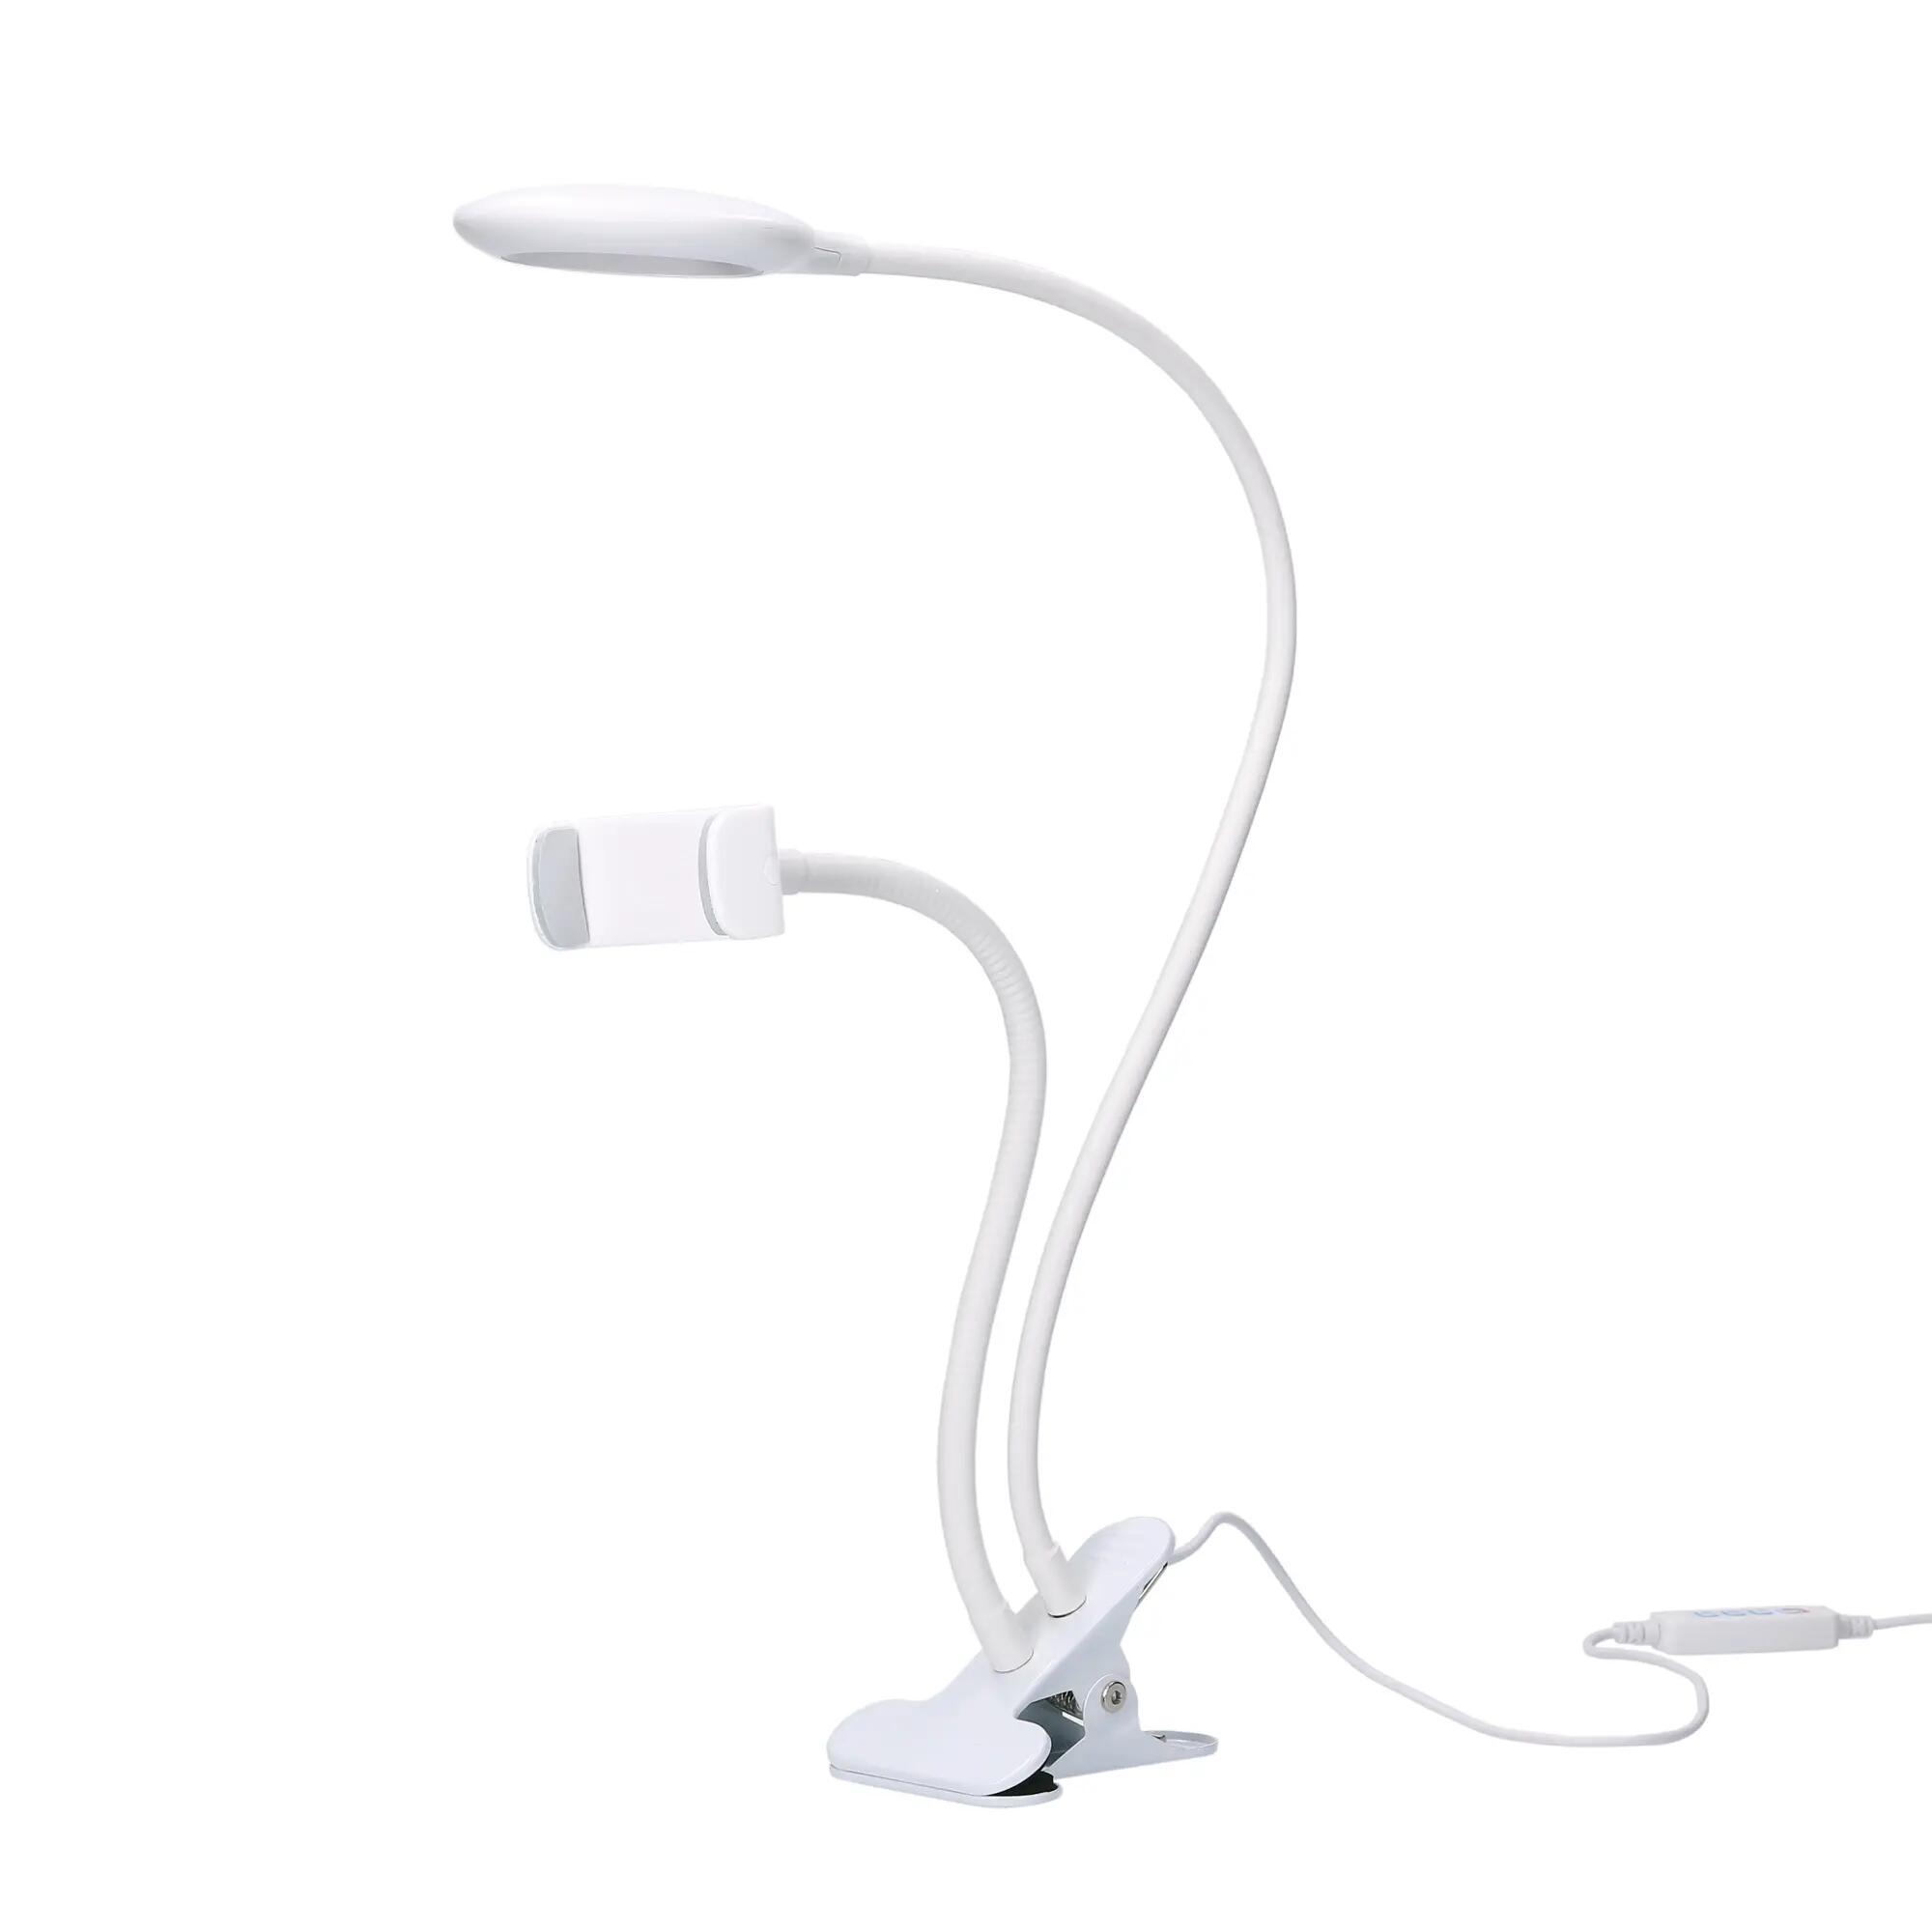 Flexo led blanco con pinza para móvil,4.8w,tono e intensidad regulable,flexible